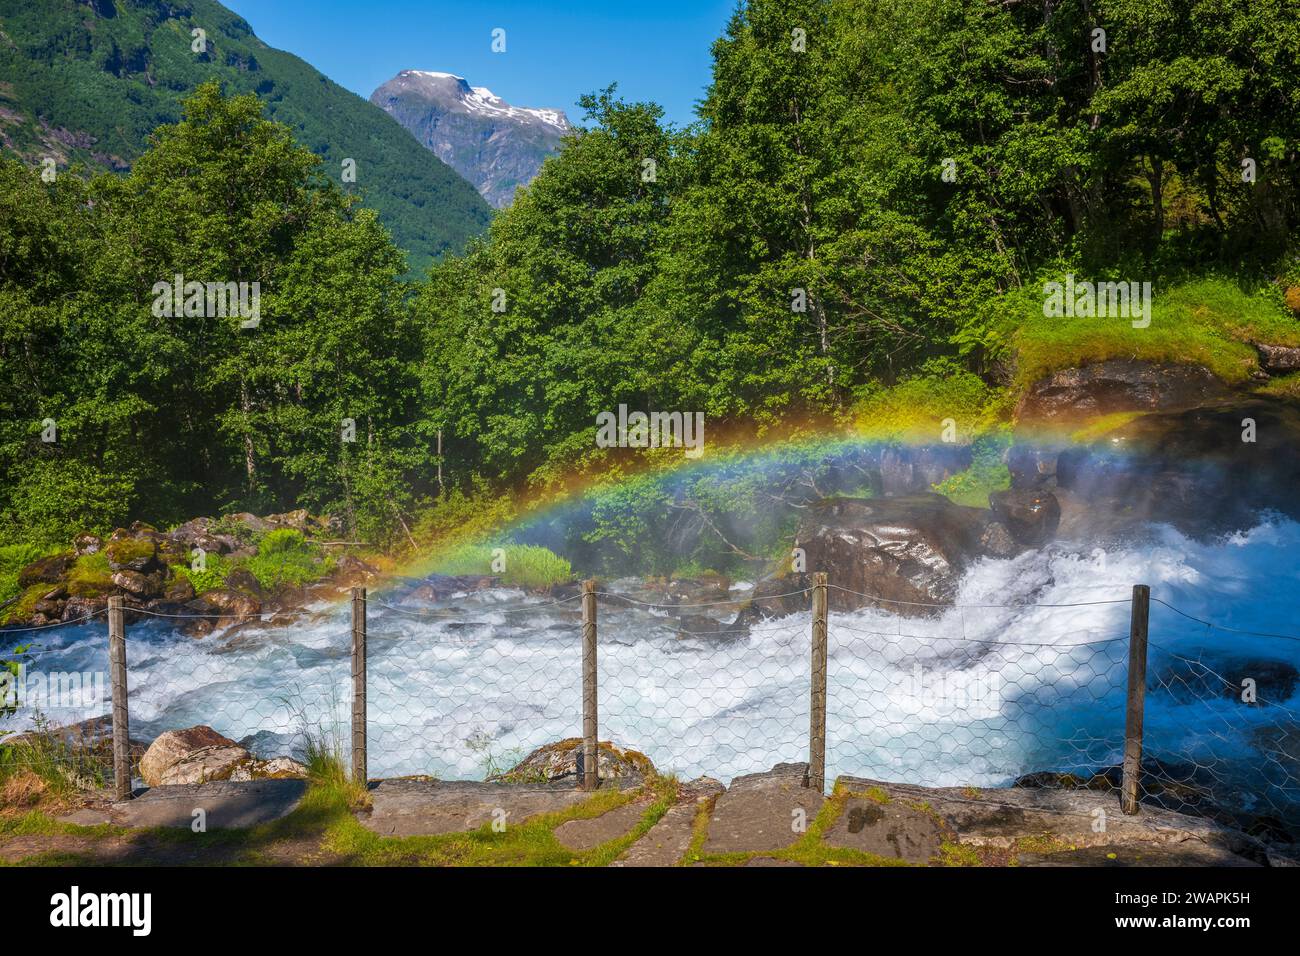 Una piccola cascata di nome Kleivafossen situata vicino a un campeggio nel piccolo villaggio e popolare località di viaggio Geiranger, Norvegia, un patrimonio mondiale dell'UNESCO Foto Stock